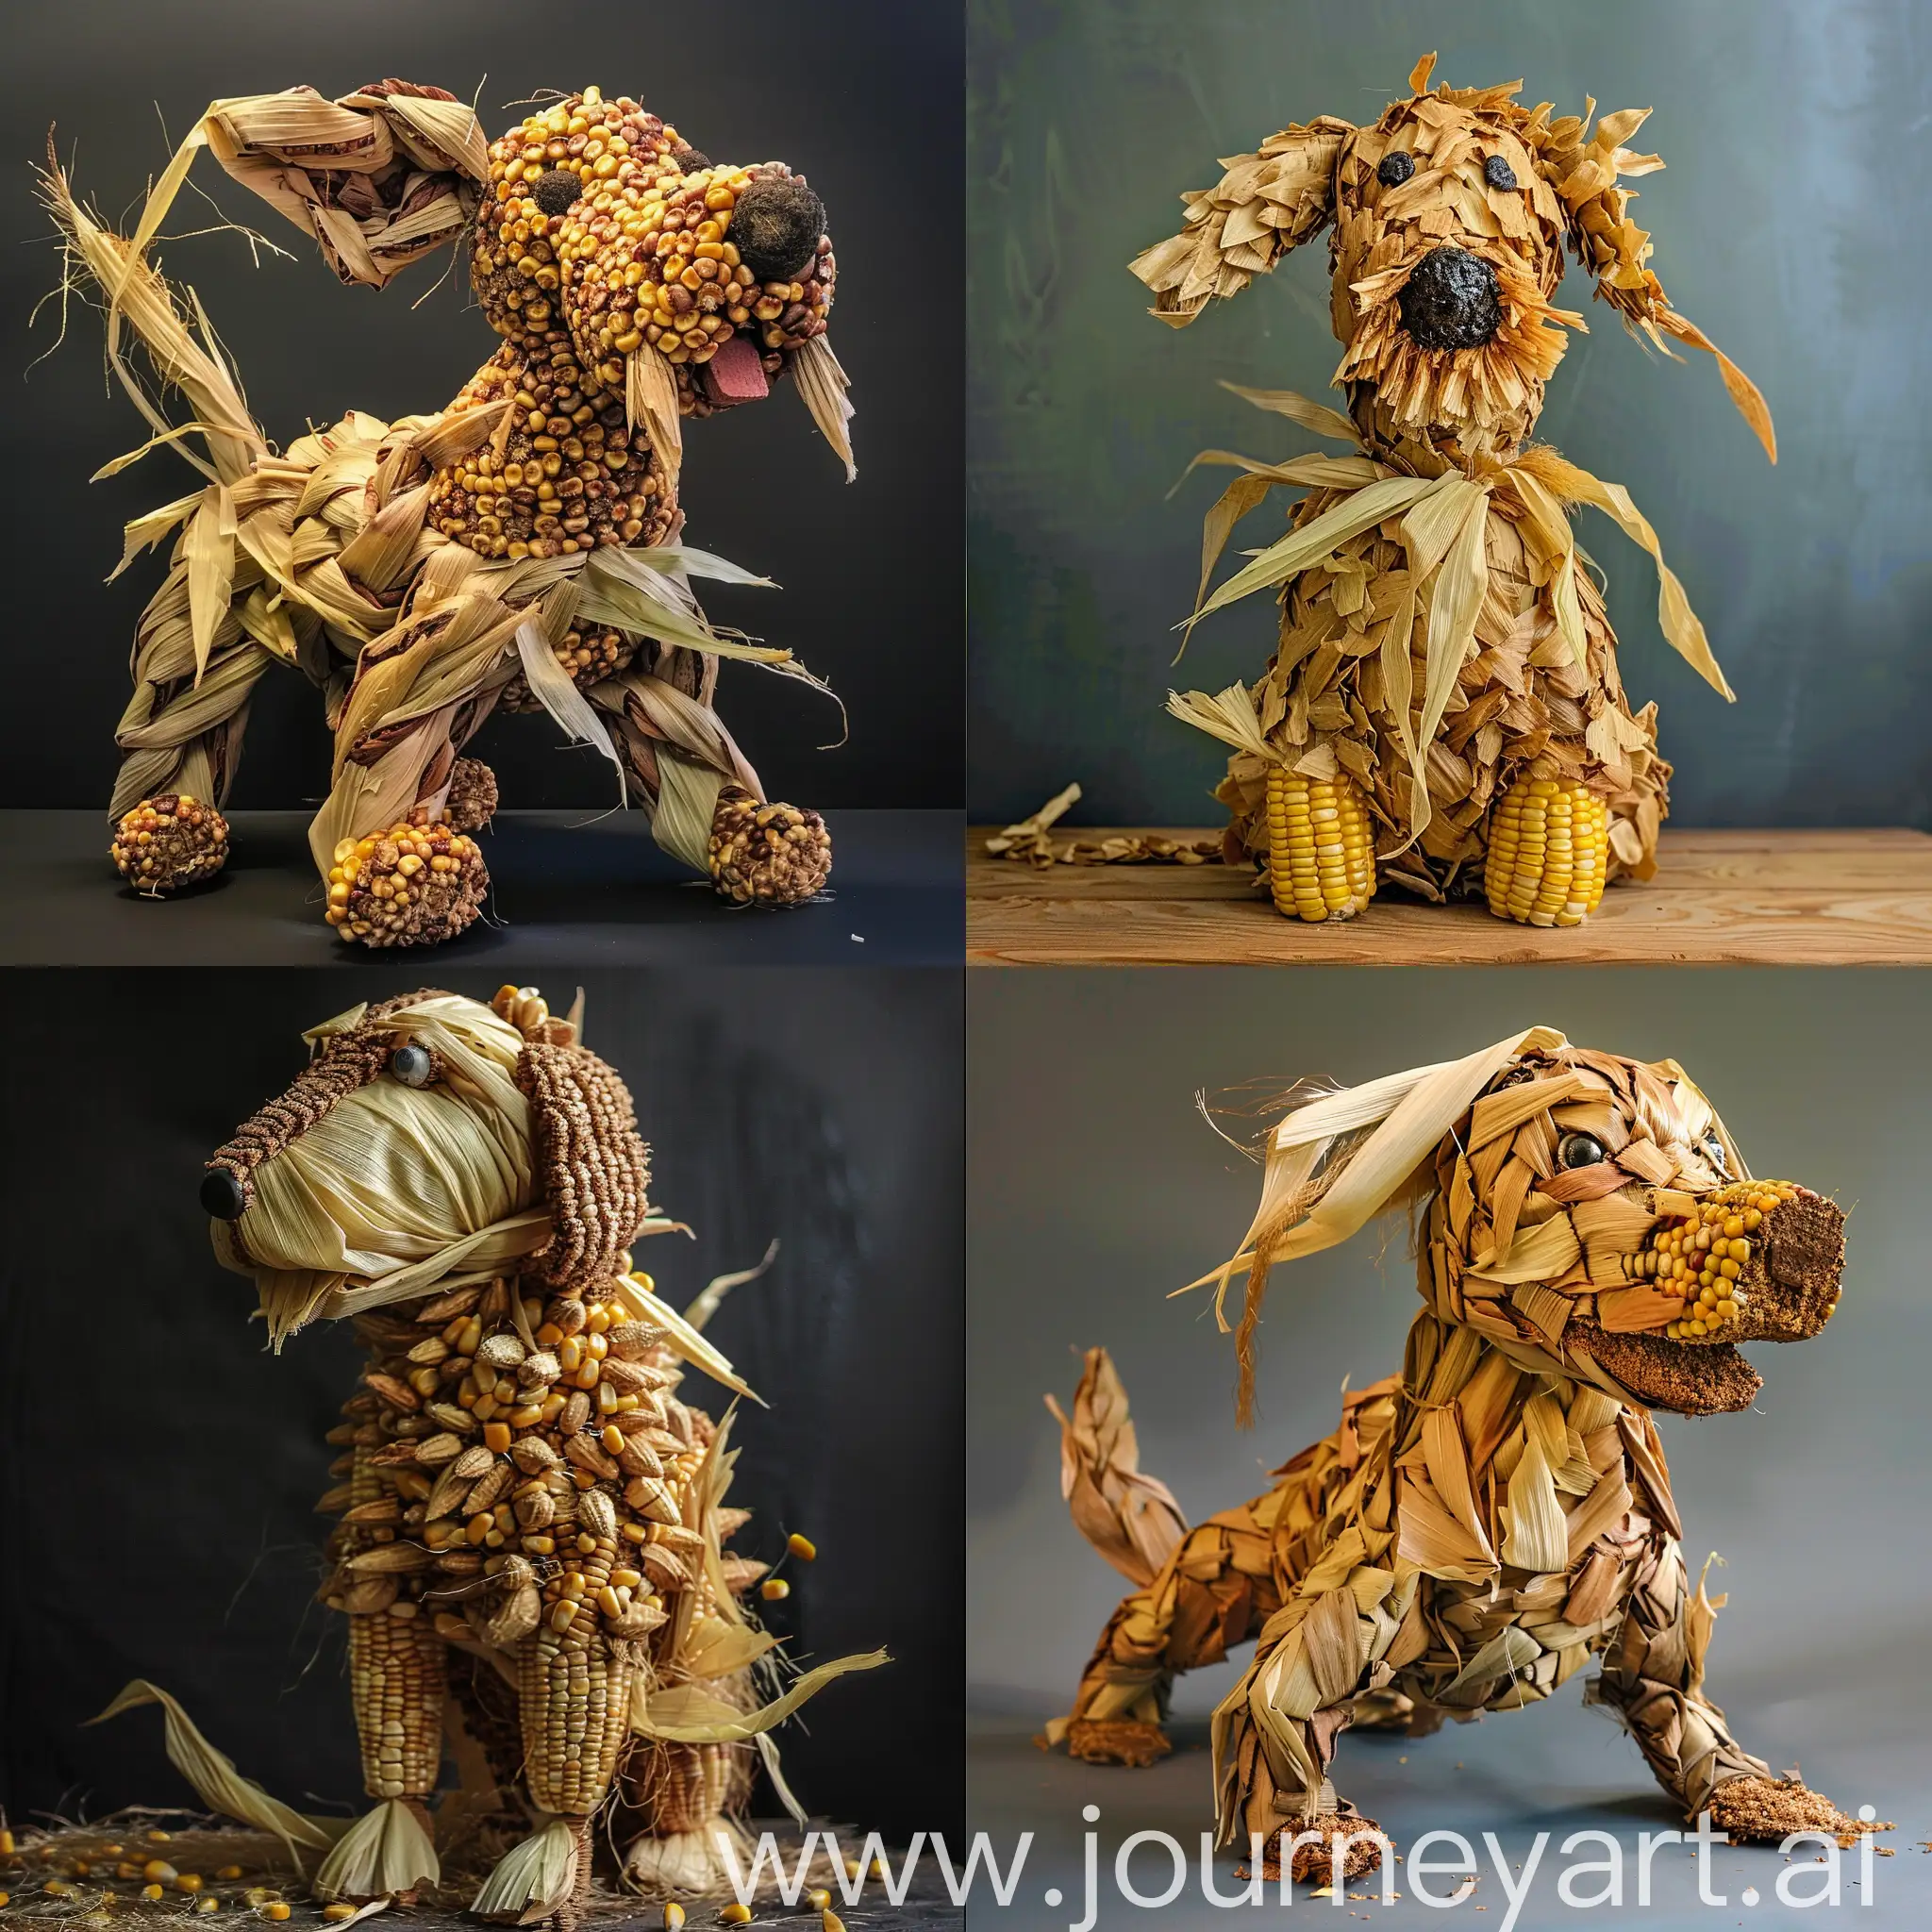 Dog made of corn and husks